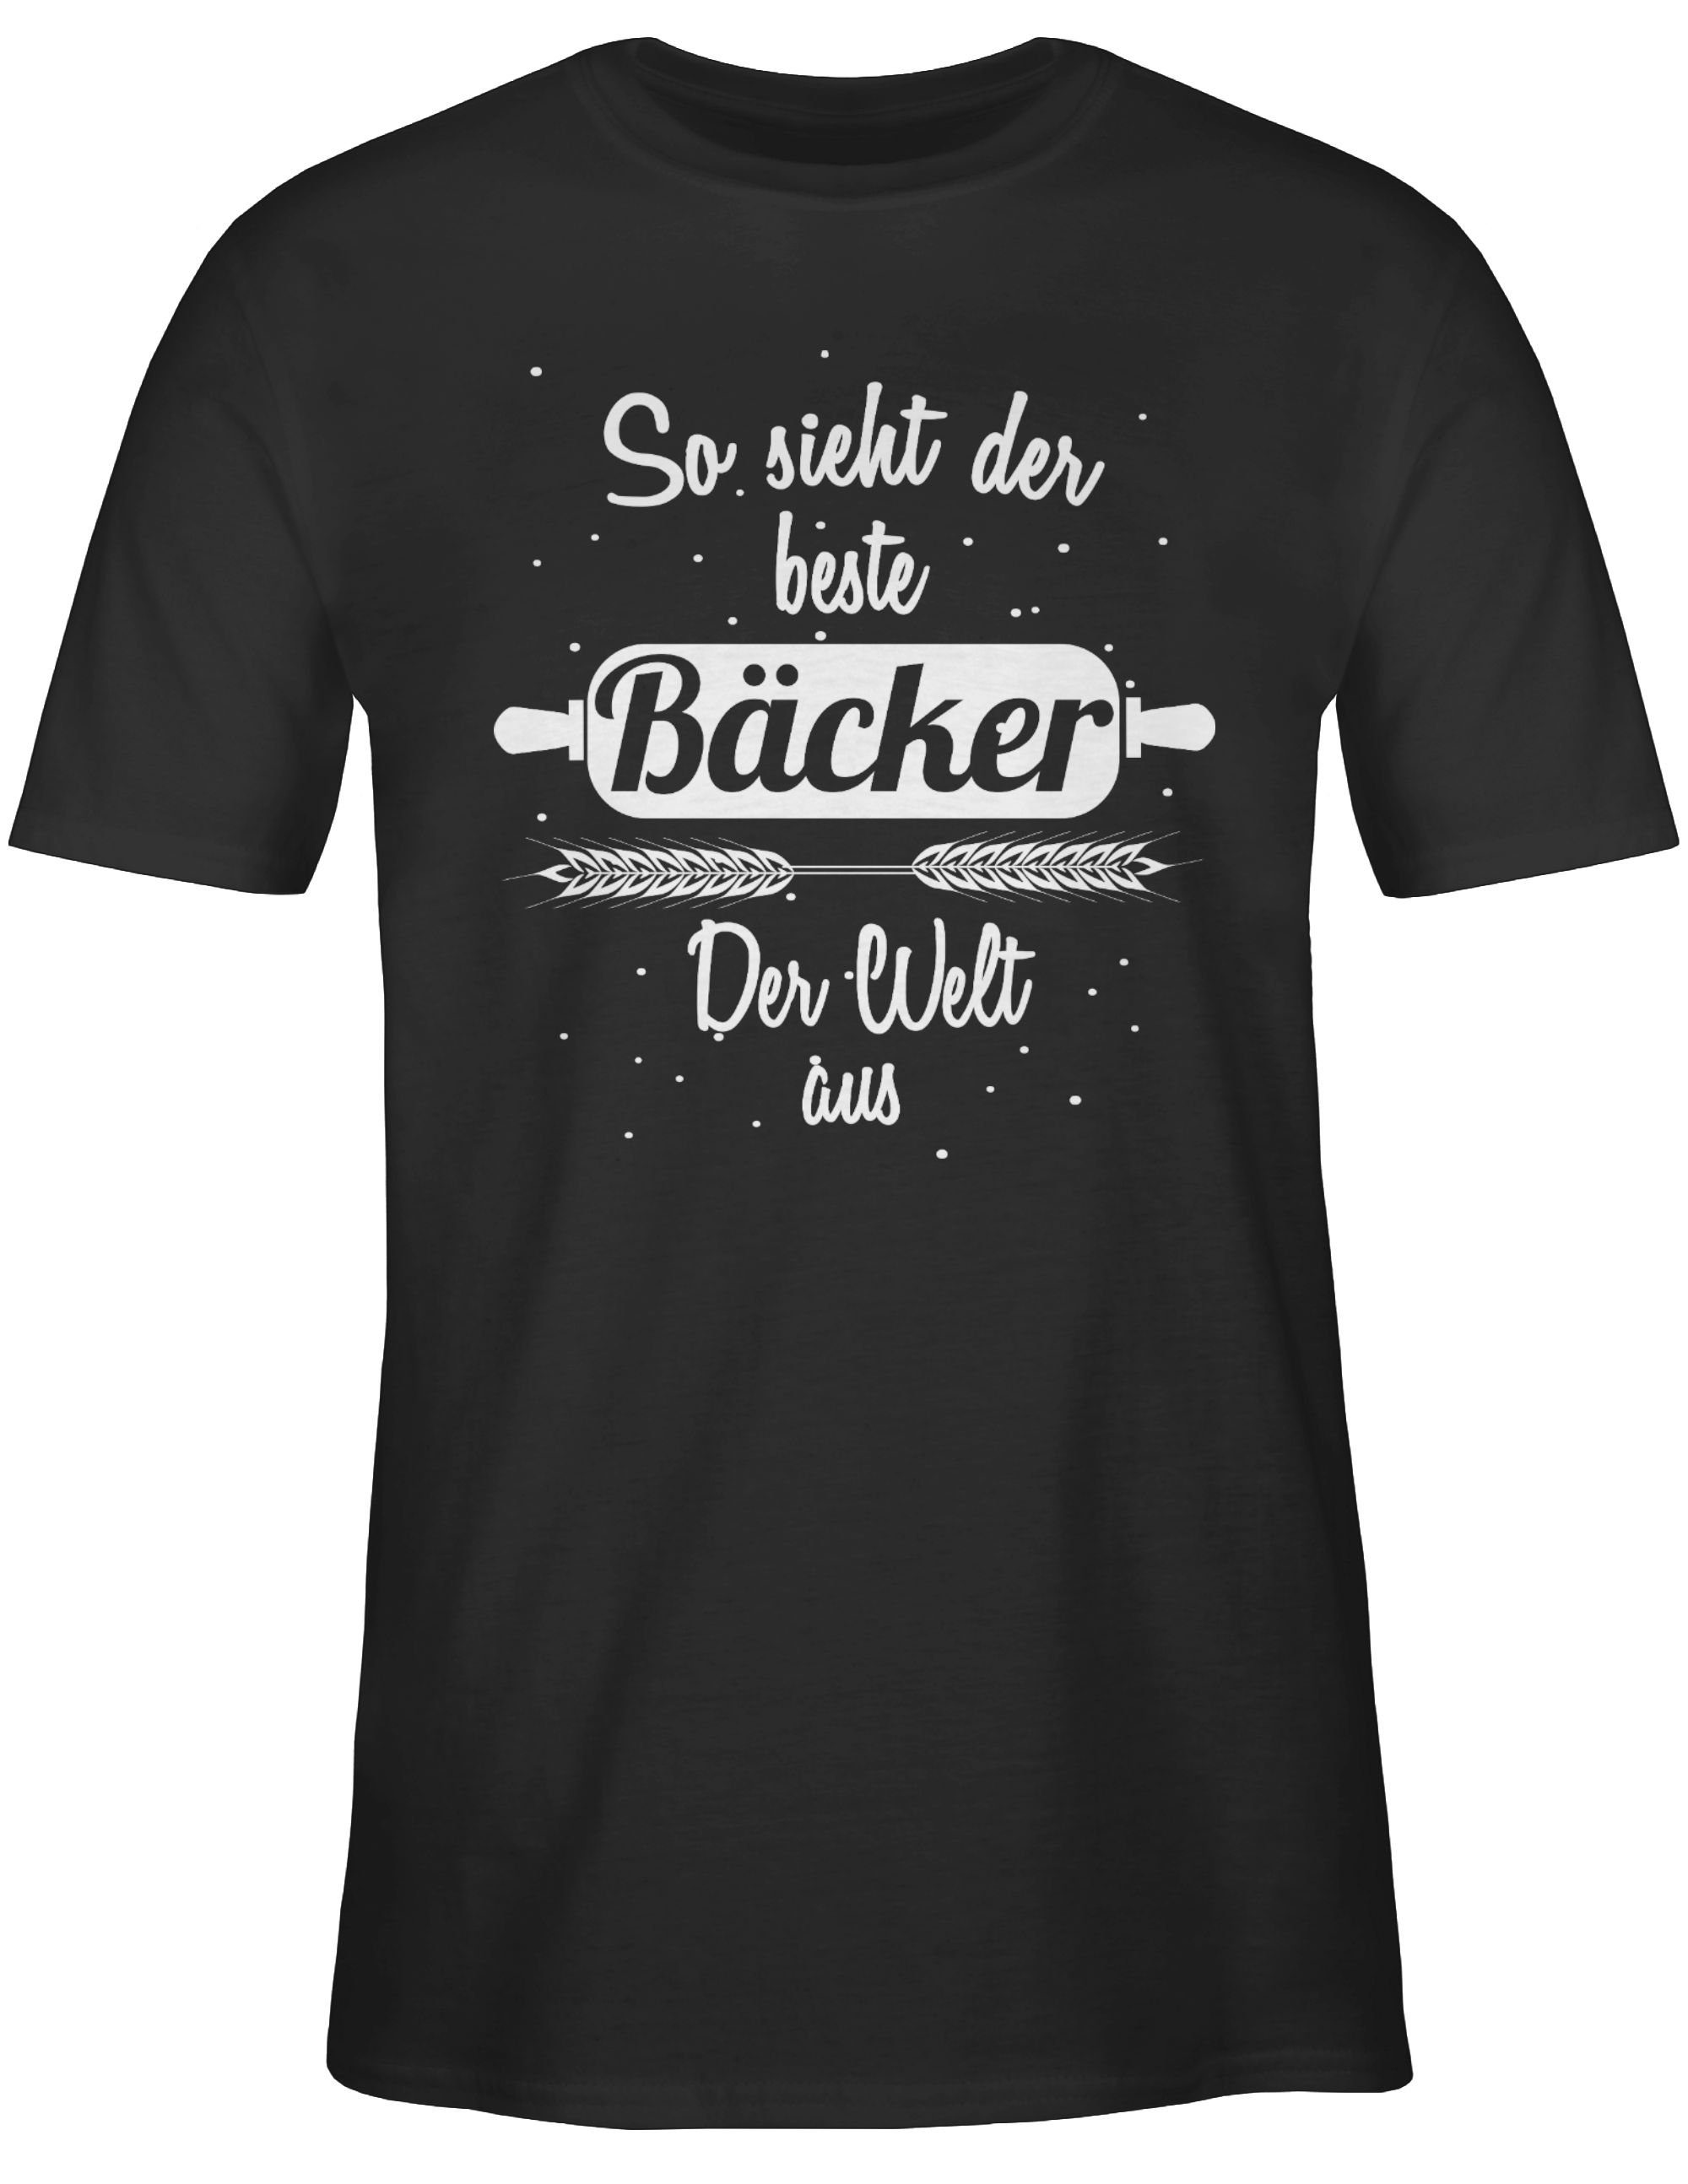 Shirtracer T-Shirt So sieht der beste der Geschenke und Schwarz 1 Welt Bäcker Job Beruf aus